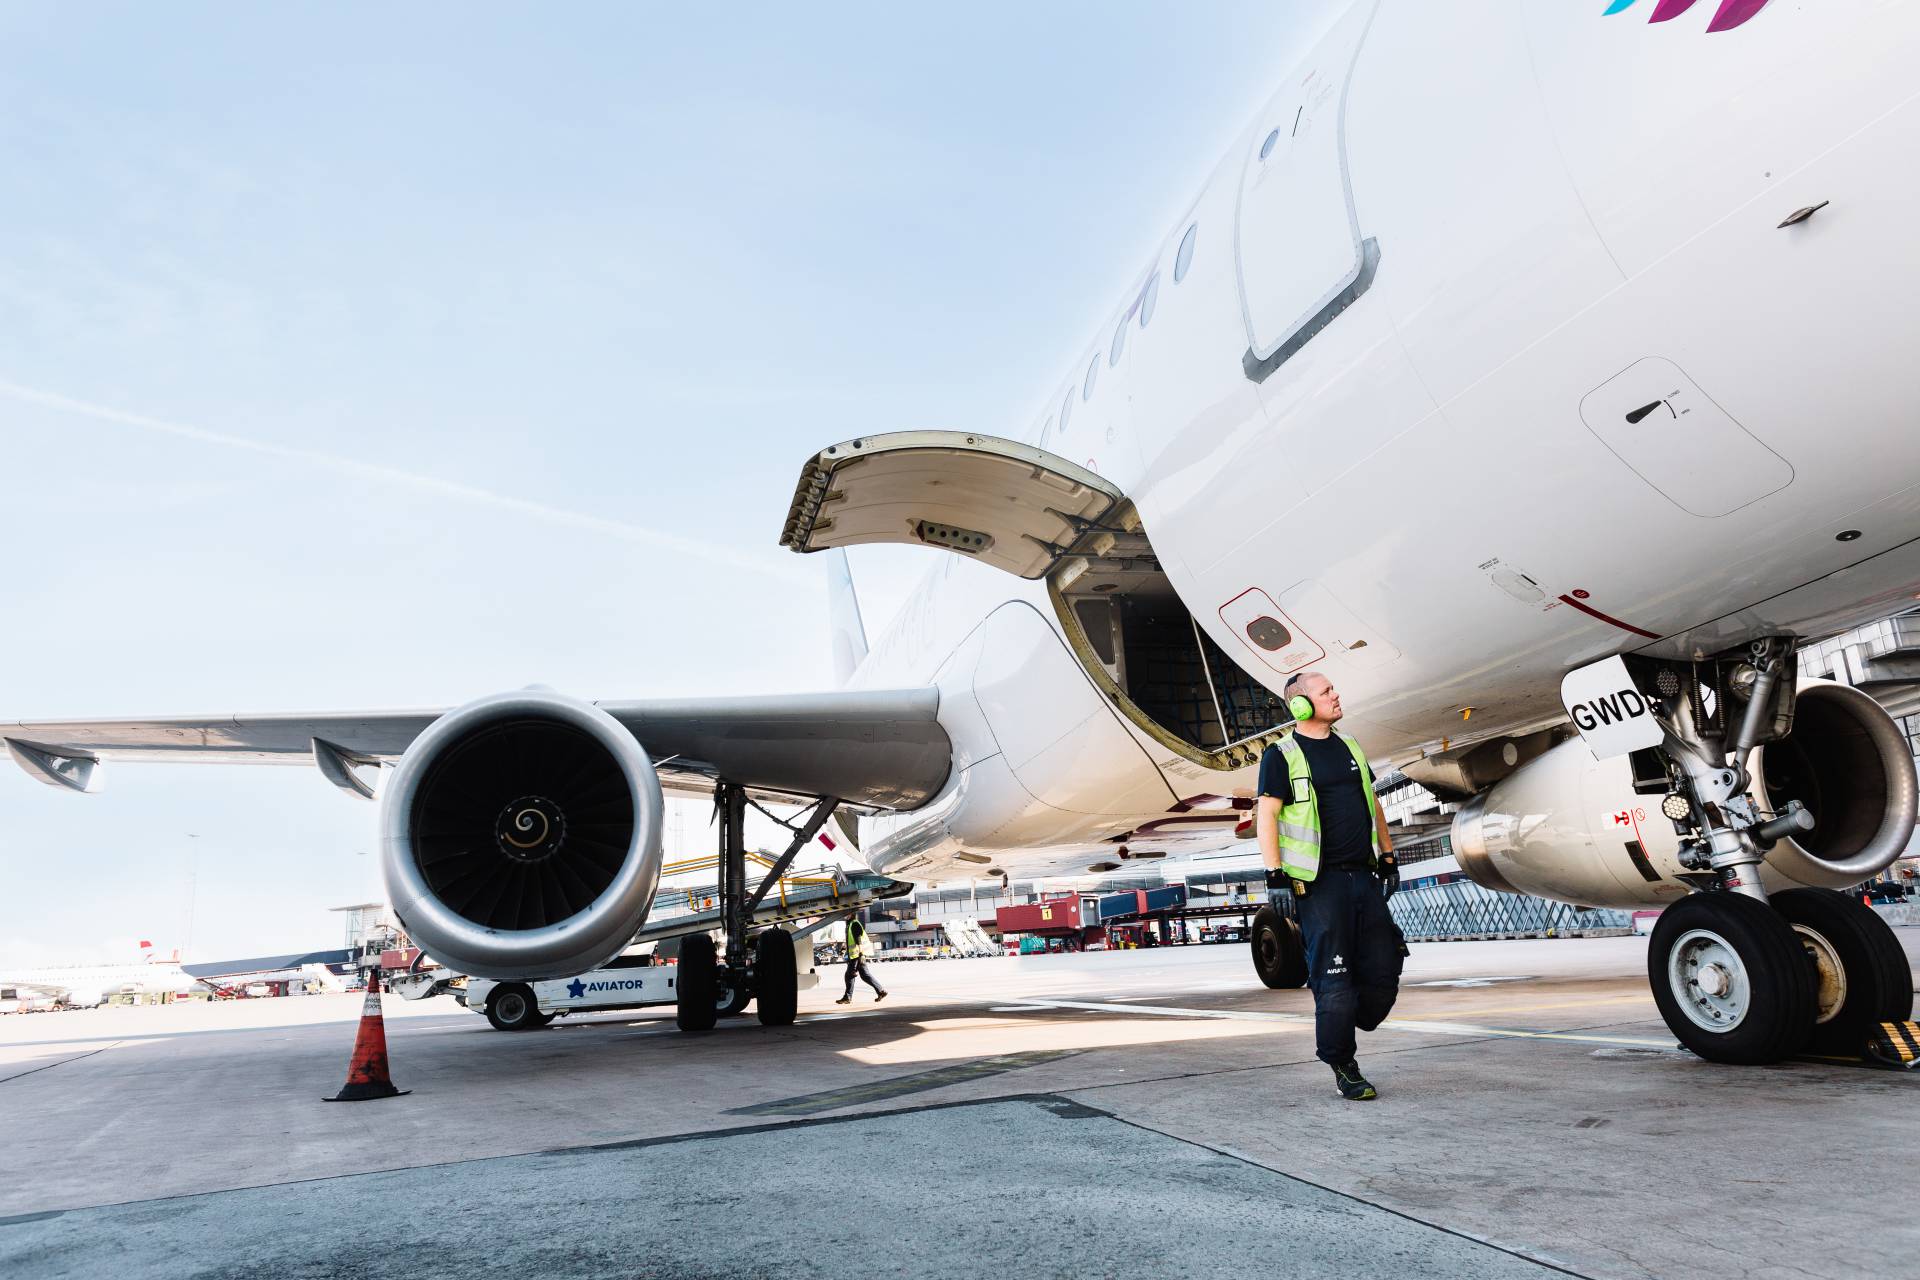 Agen penanganan Aviator memperluas kemitraan dengan Finnair selama 5 tahun lagi di Bandara Helsinki